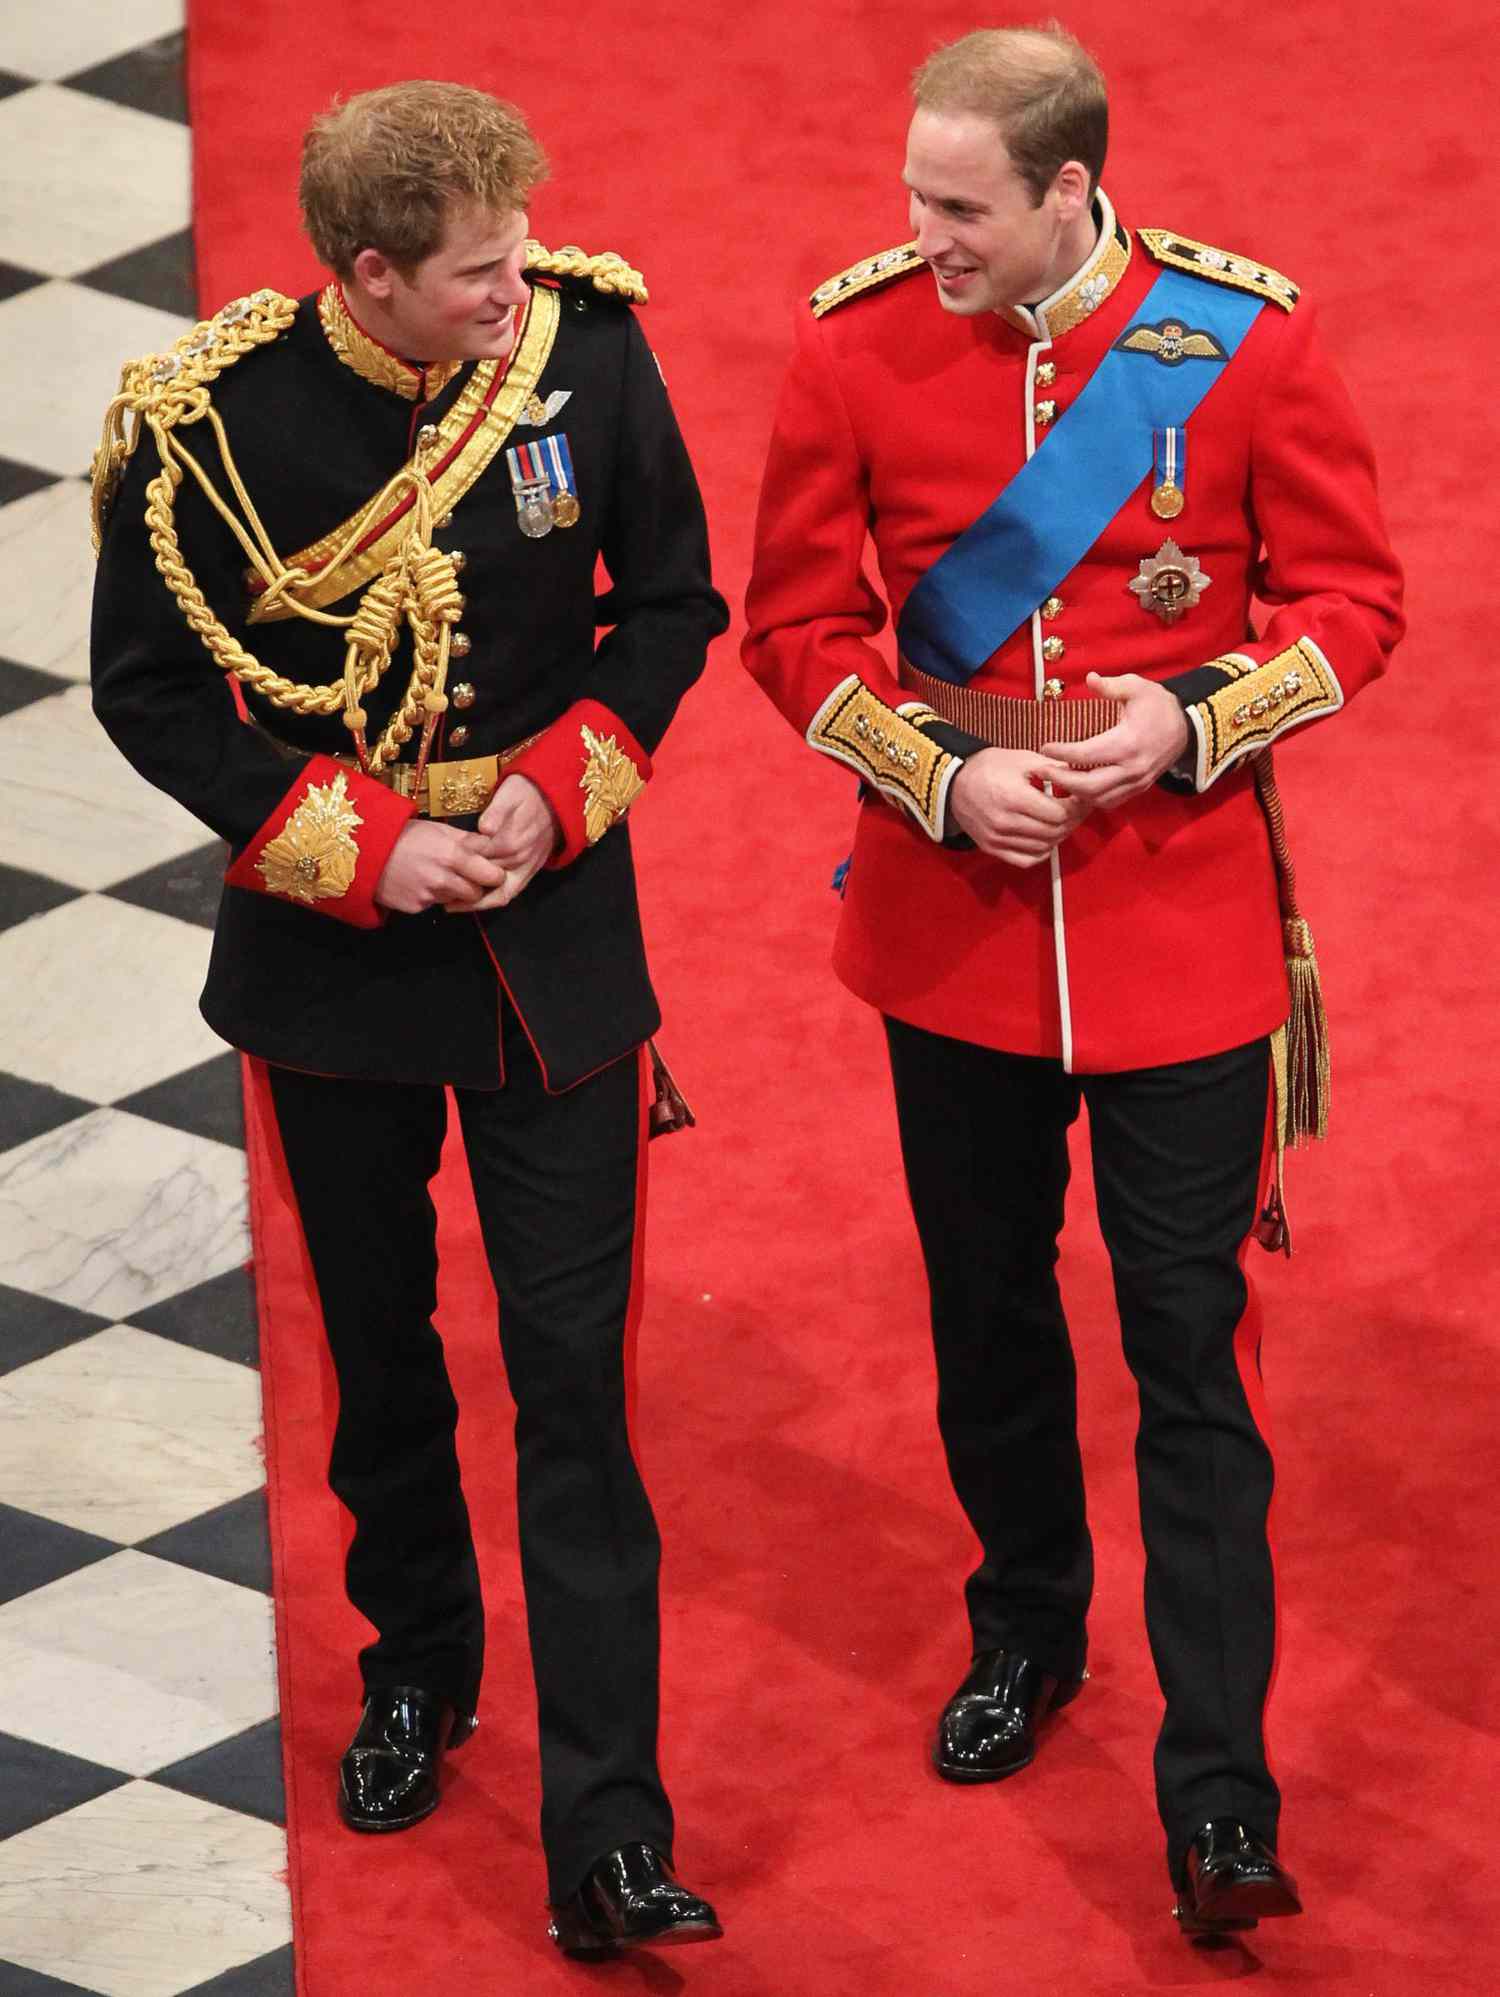 Pangeran William Membuat Lelucon Tentang Pangeran Harry dalam Pidato Pernikahannya Yang Dia Anggap 'Sangat Lucu'